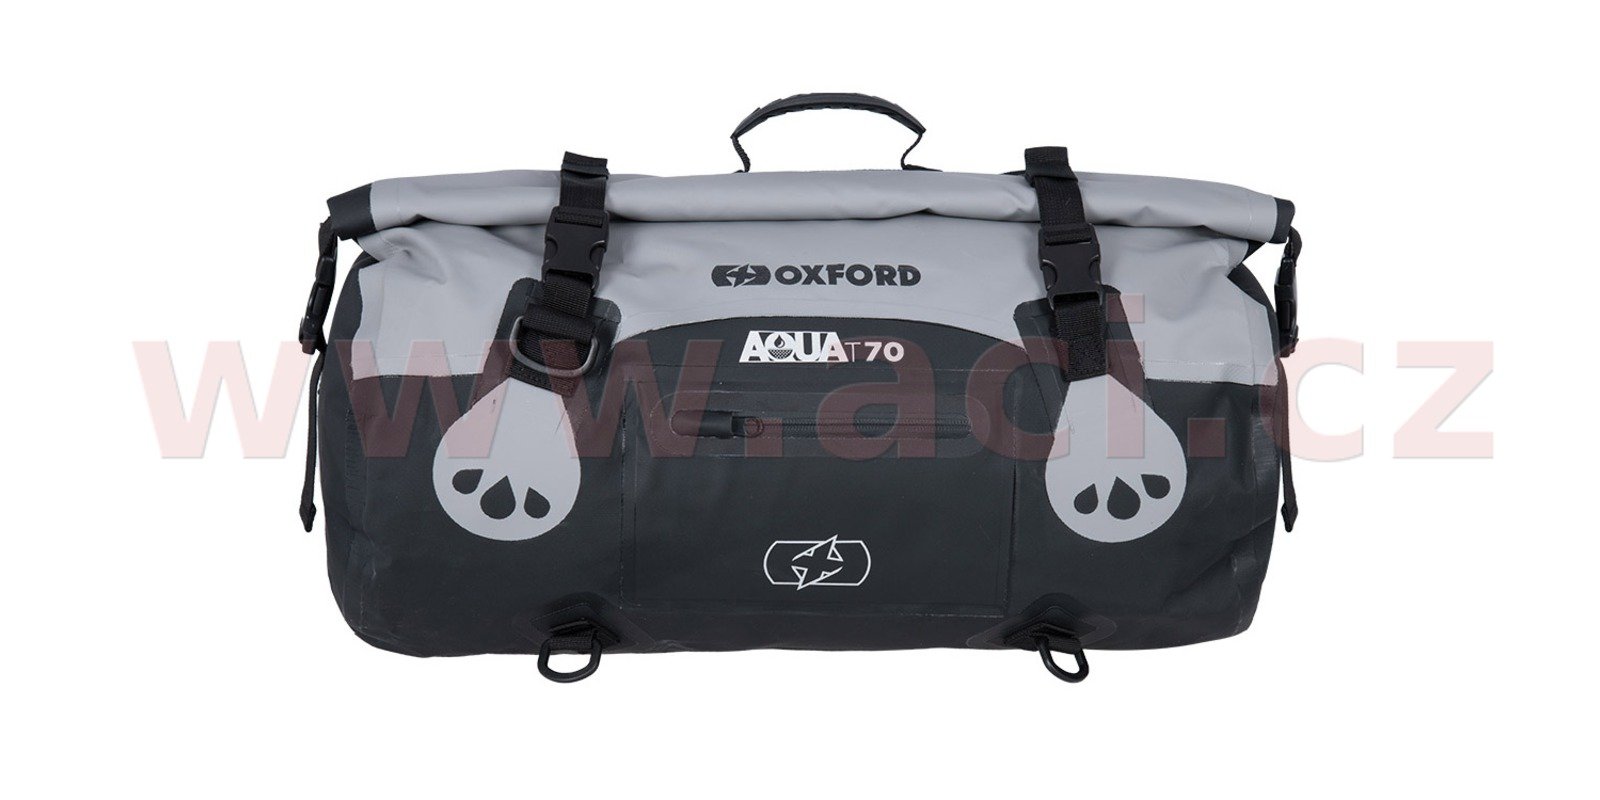 Obrázek produktu OXFORD Aqua T-70 Roll Bag Grey/Black 70L OL483